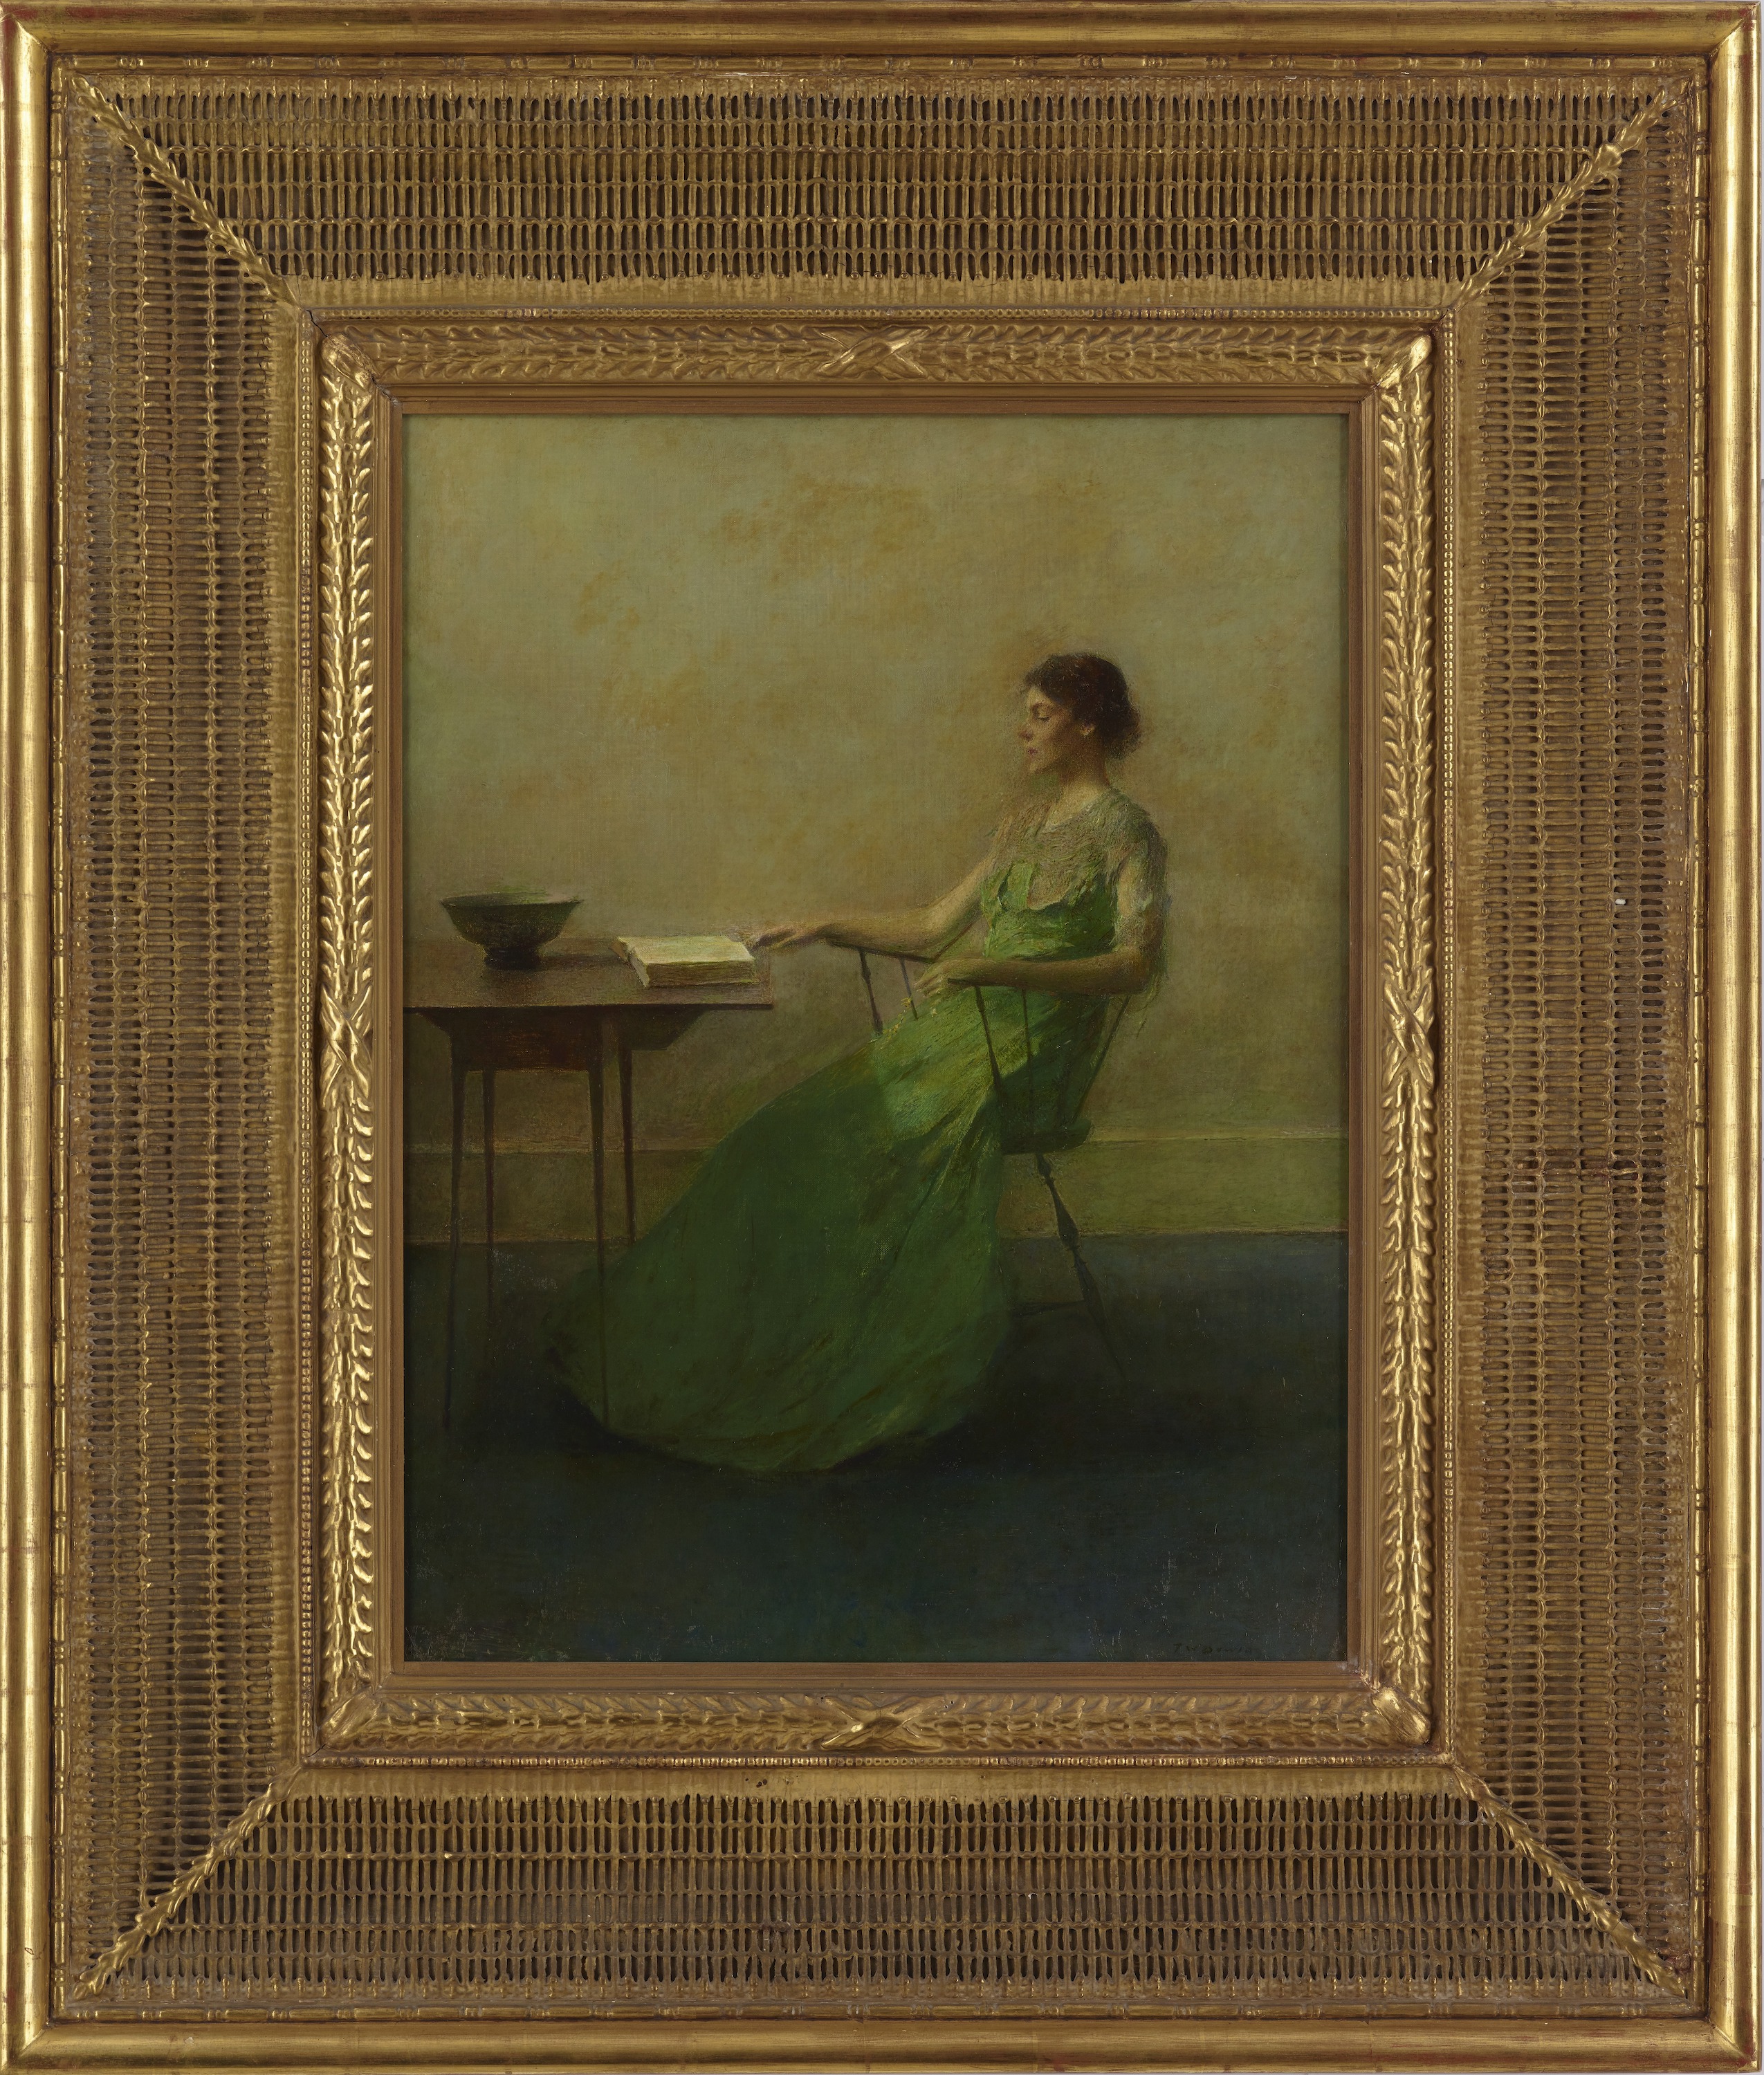 La guirnalda by Thomas Wilmer Dewing - ca. 1916 - 63,7 x 48,4 cm Galería Freer